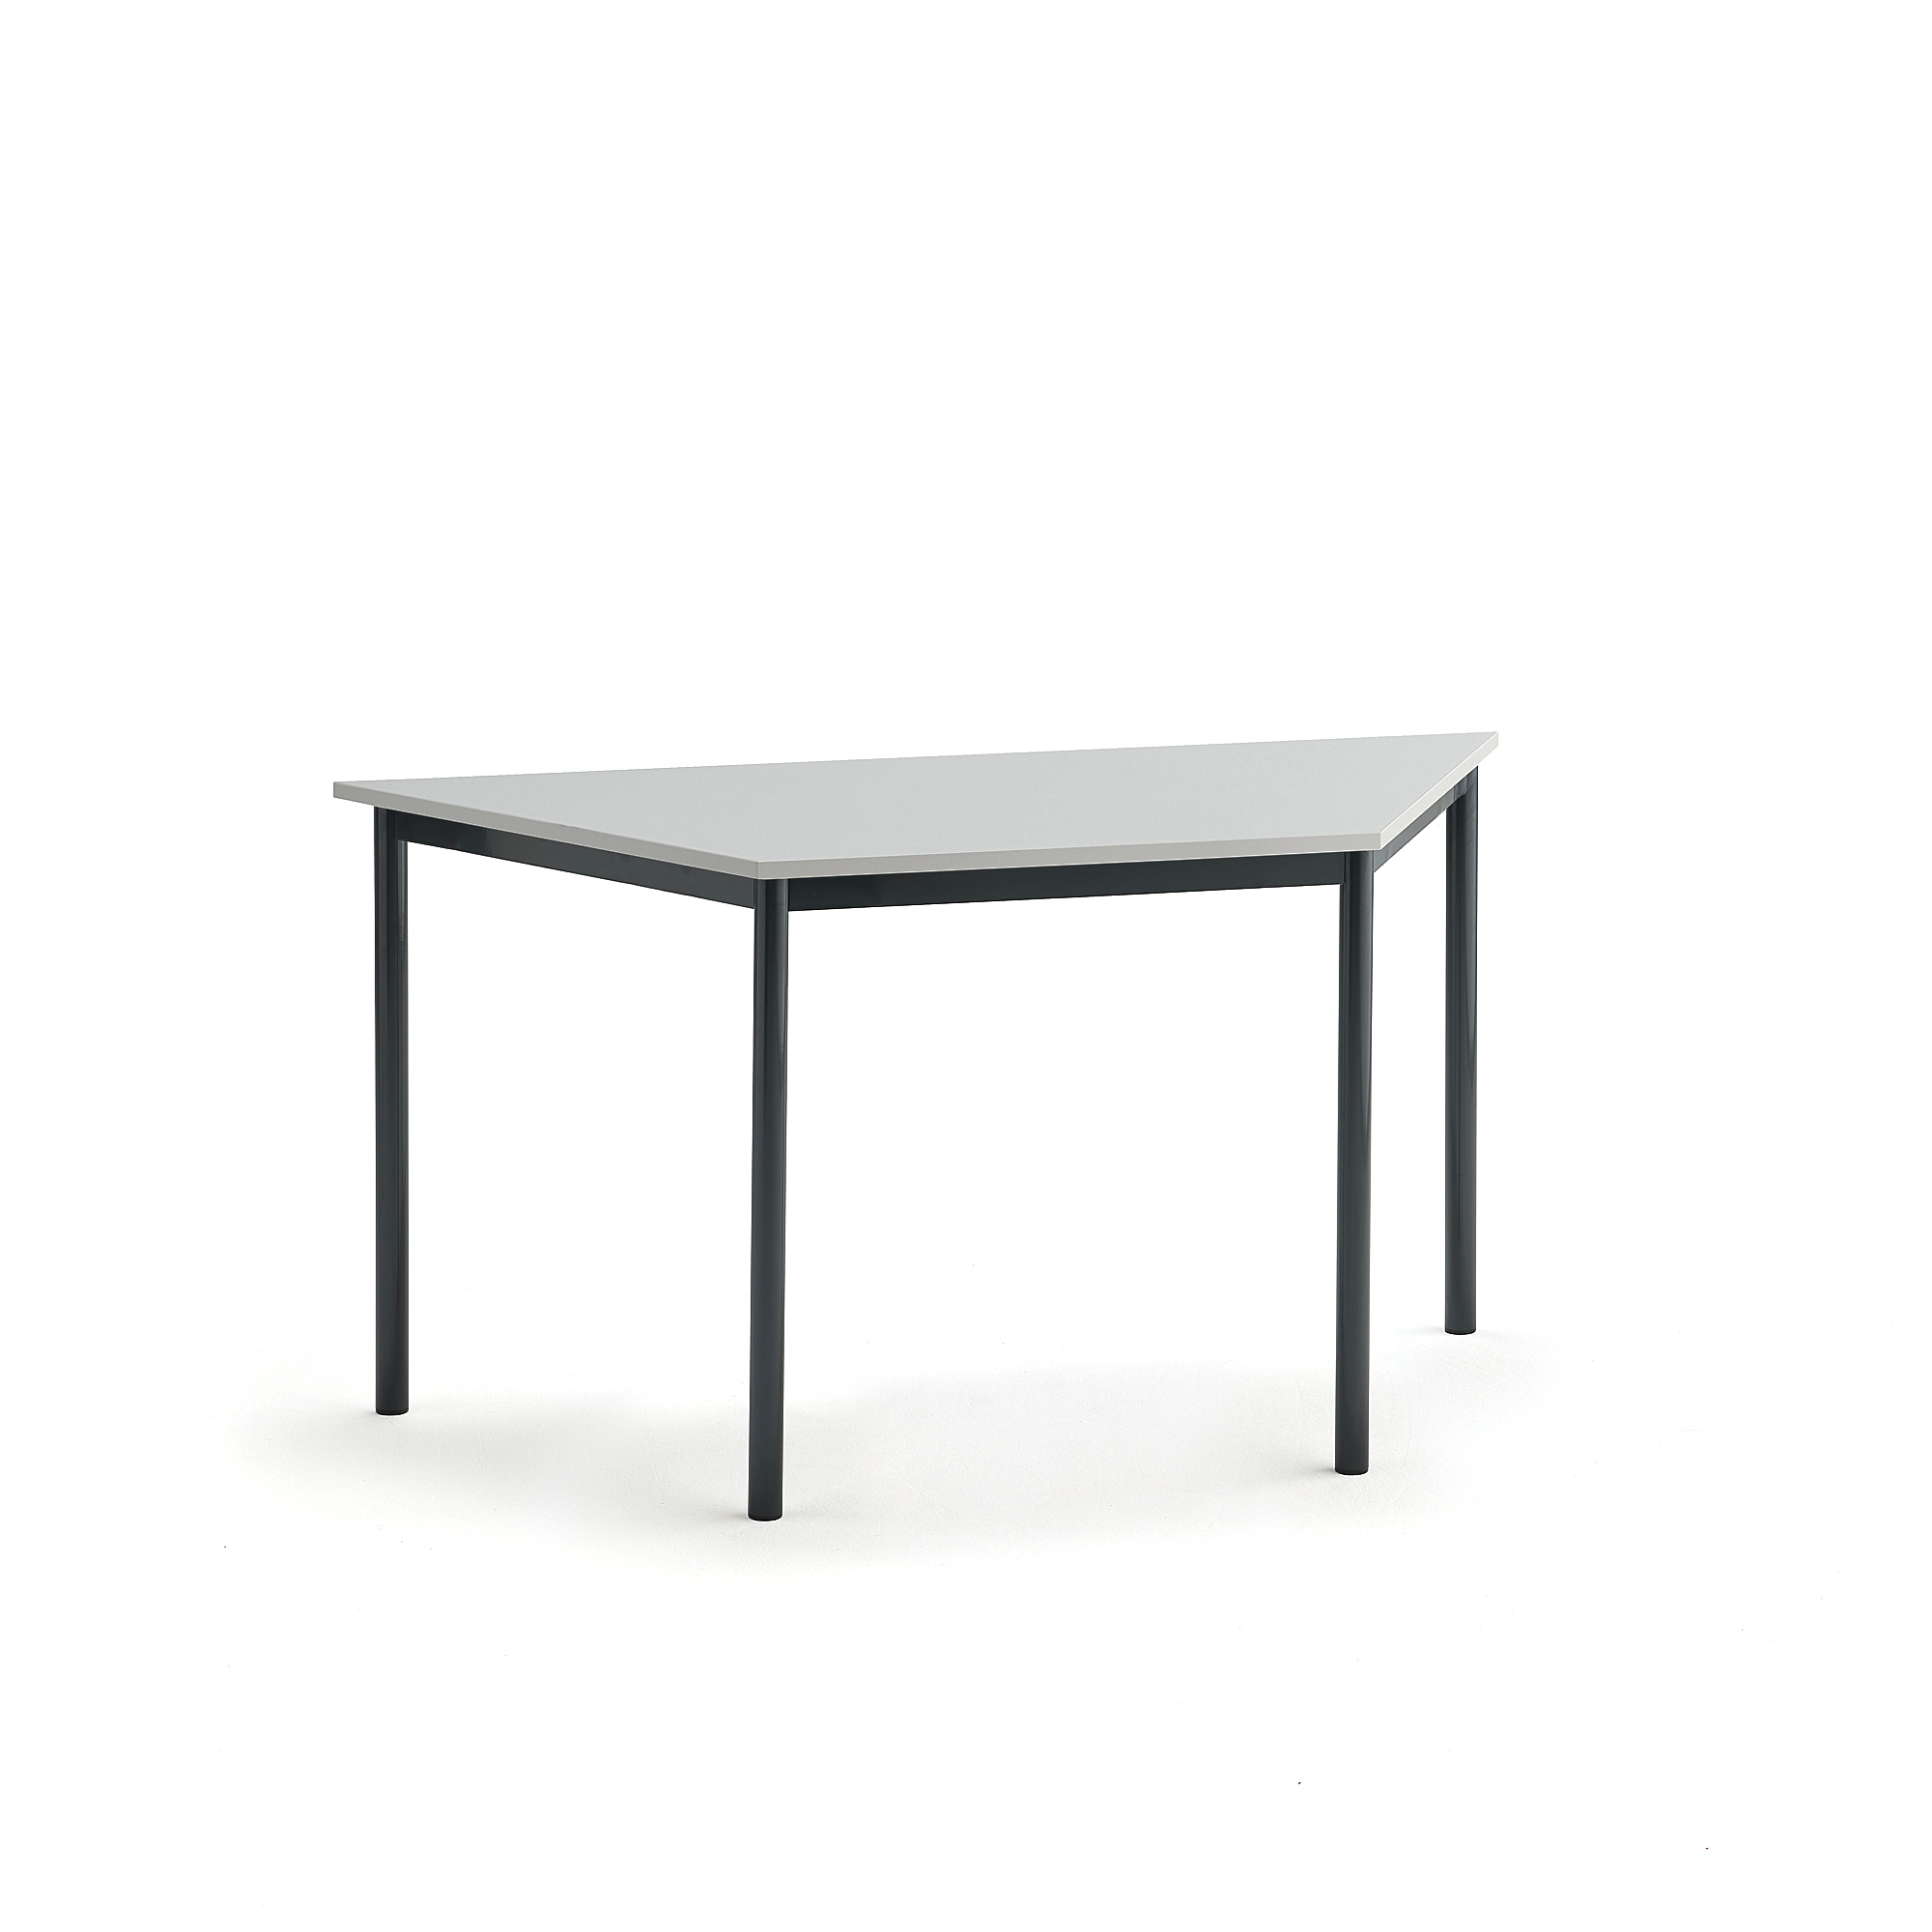 Stůl SONITUS TRAPETS, 1400x700x720 mm, antracitově šedé nohy, HPL deska tlumící hluk, šedá